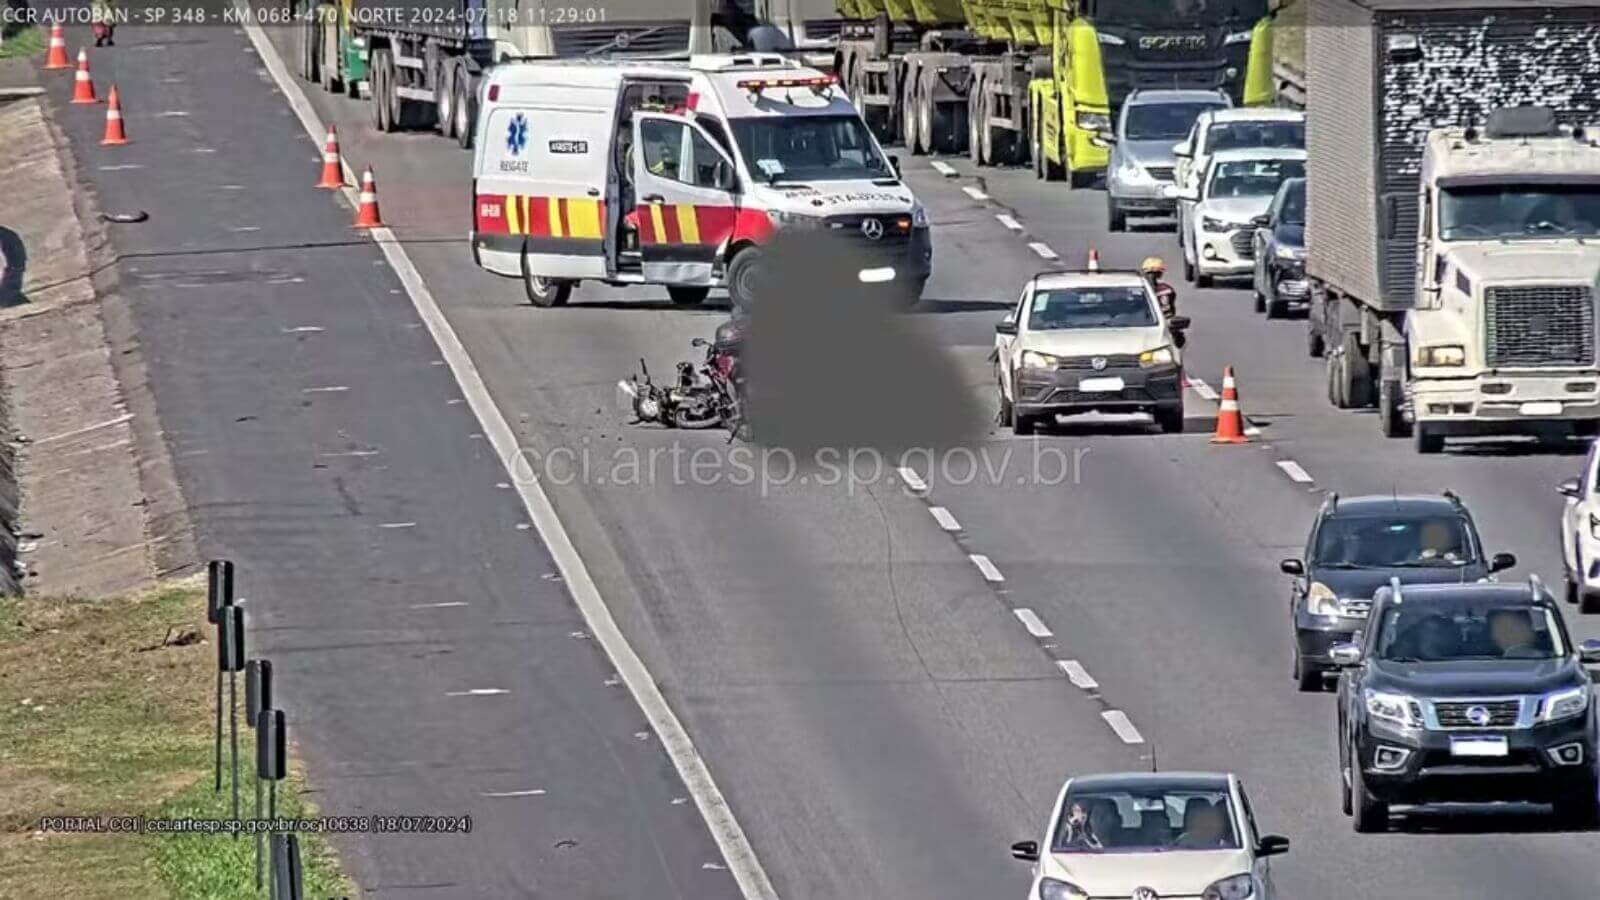 Motociclista fica ferido após colisão na Rodovia dos Bandeirantes em Jundiaí